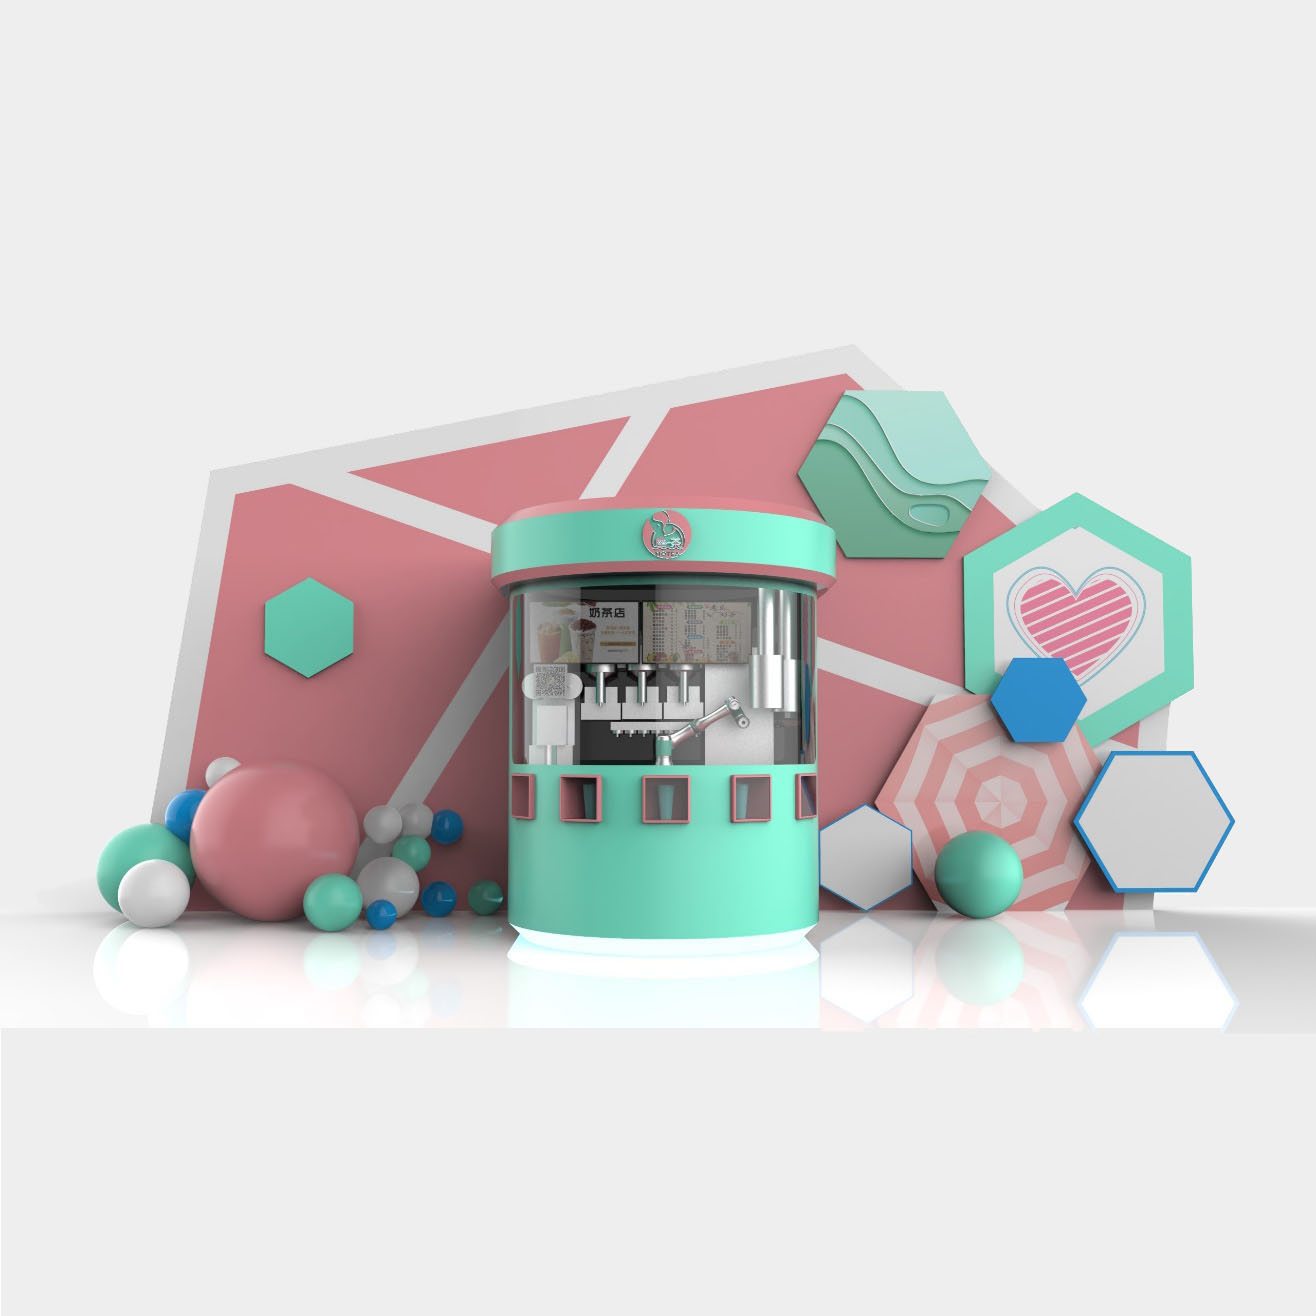 Nouveau kiosque de thé au lait de robot de mode pour des scénarios d'application d'intérieur